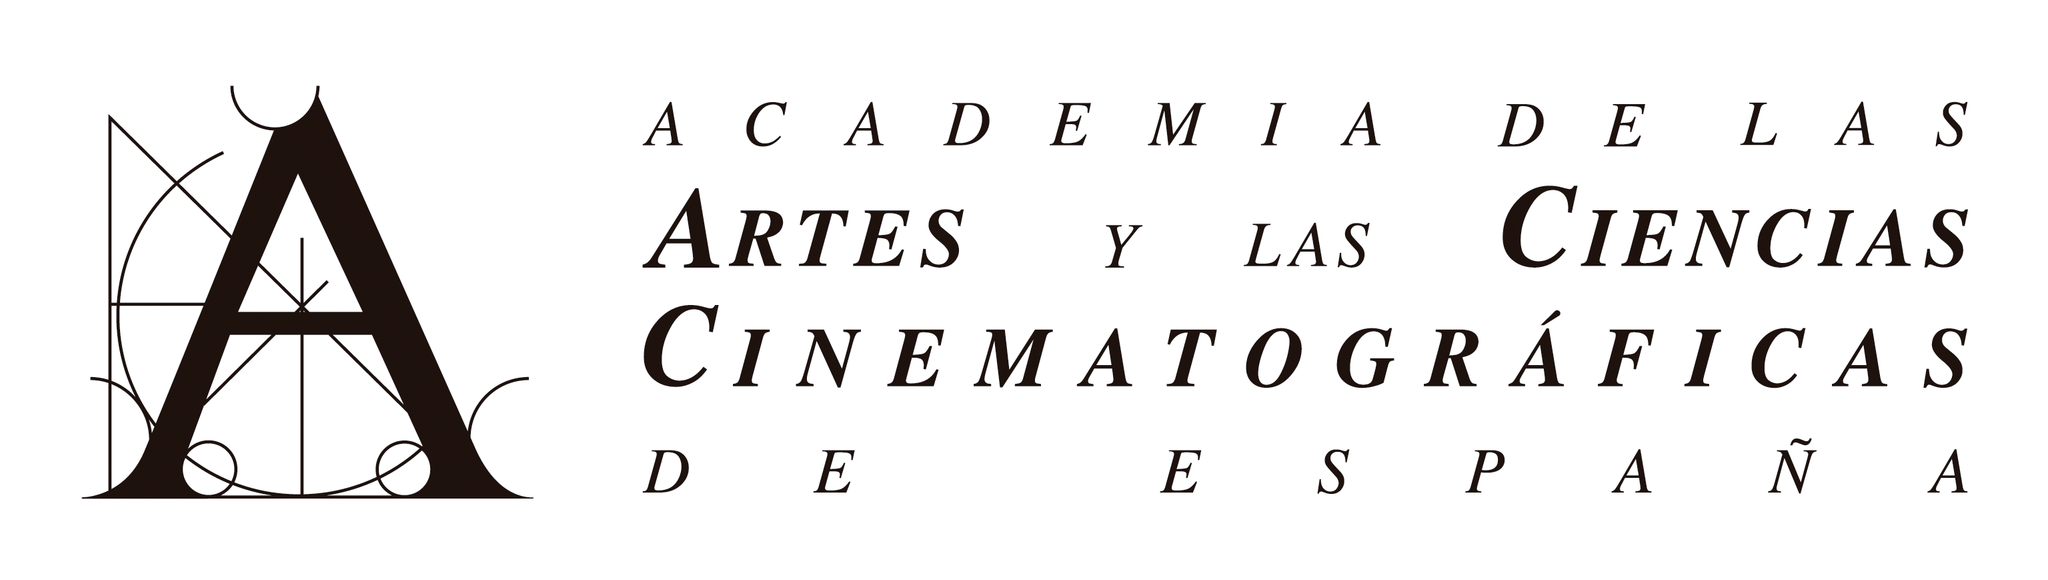 Academia de las artes y las ciencias cinematográficas de España